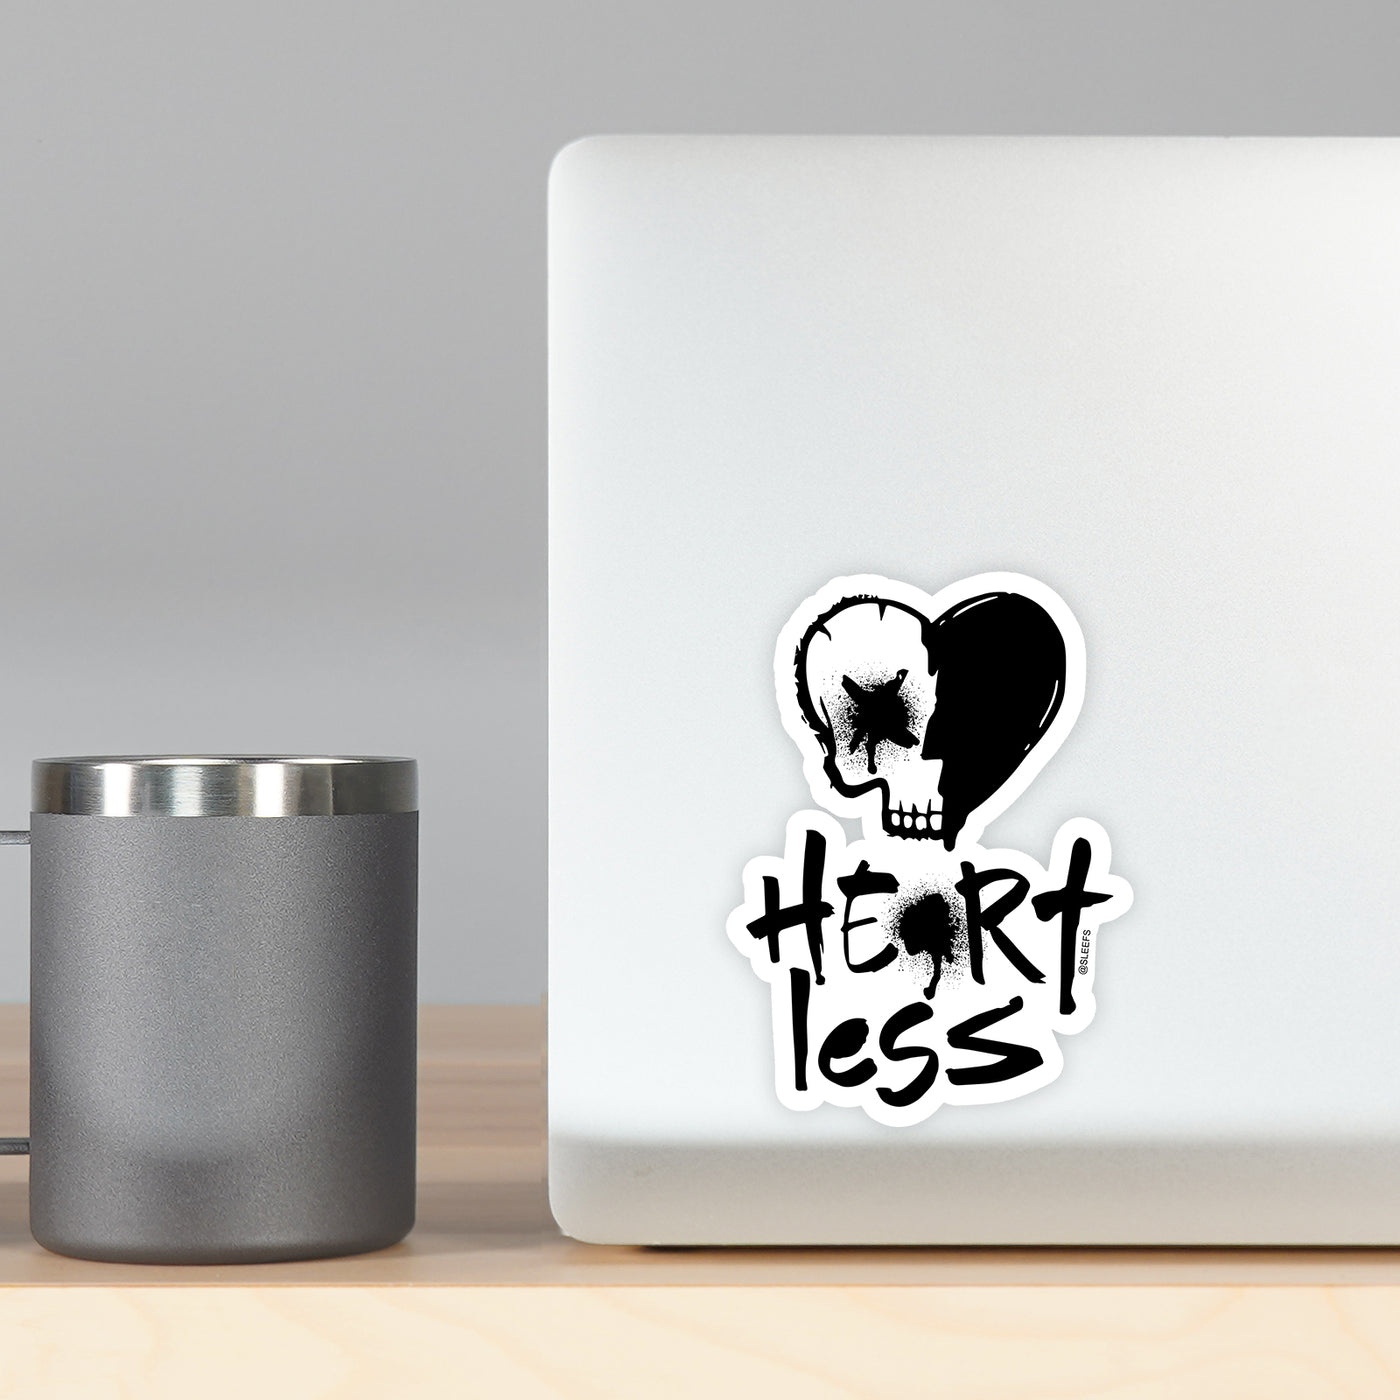 Heartless Sticker